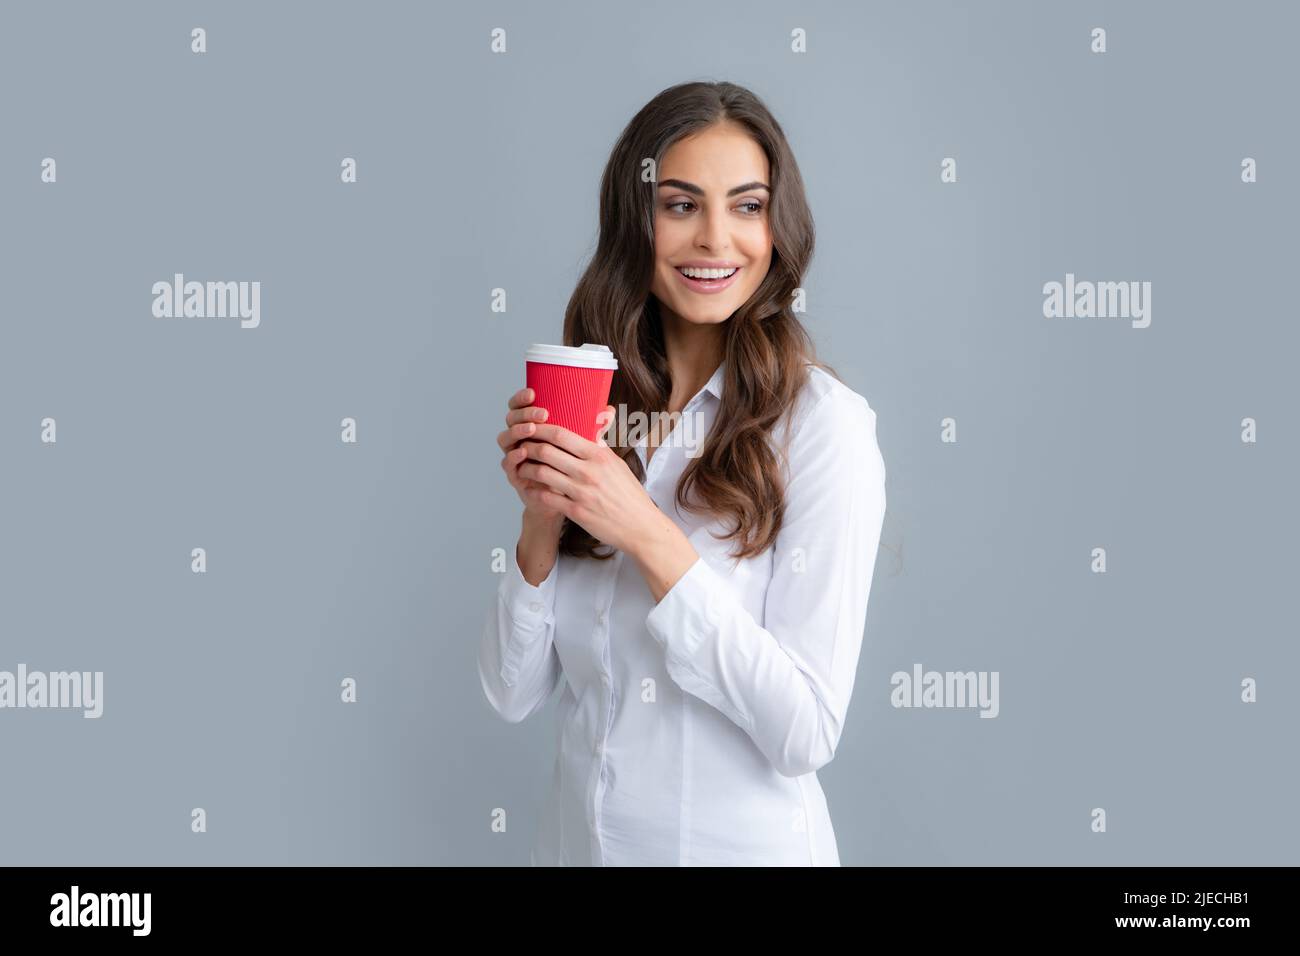 Schöne junge Frau genießt eine Tasse Kaffee beim Entspannen. Menschen, Getränke und Freizeit, glückliche junge Frau mit einer Tasse Tee oder Kaffee. Stockfoto